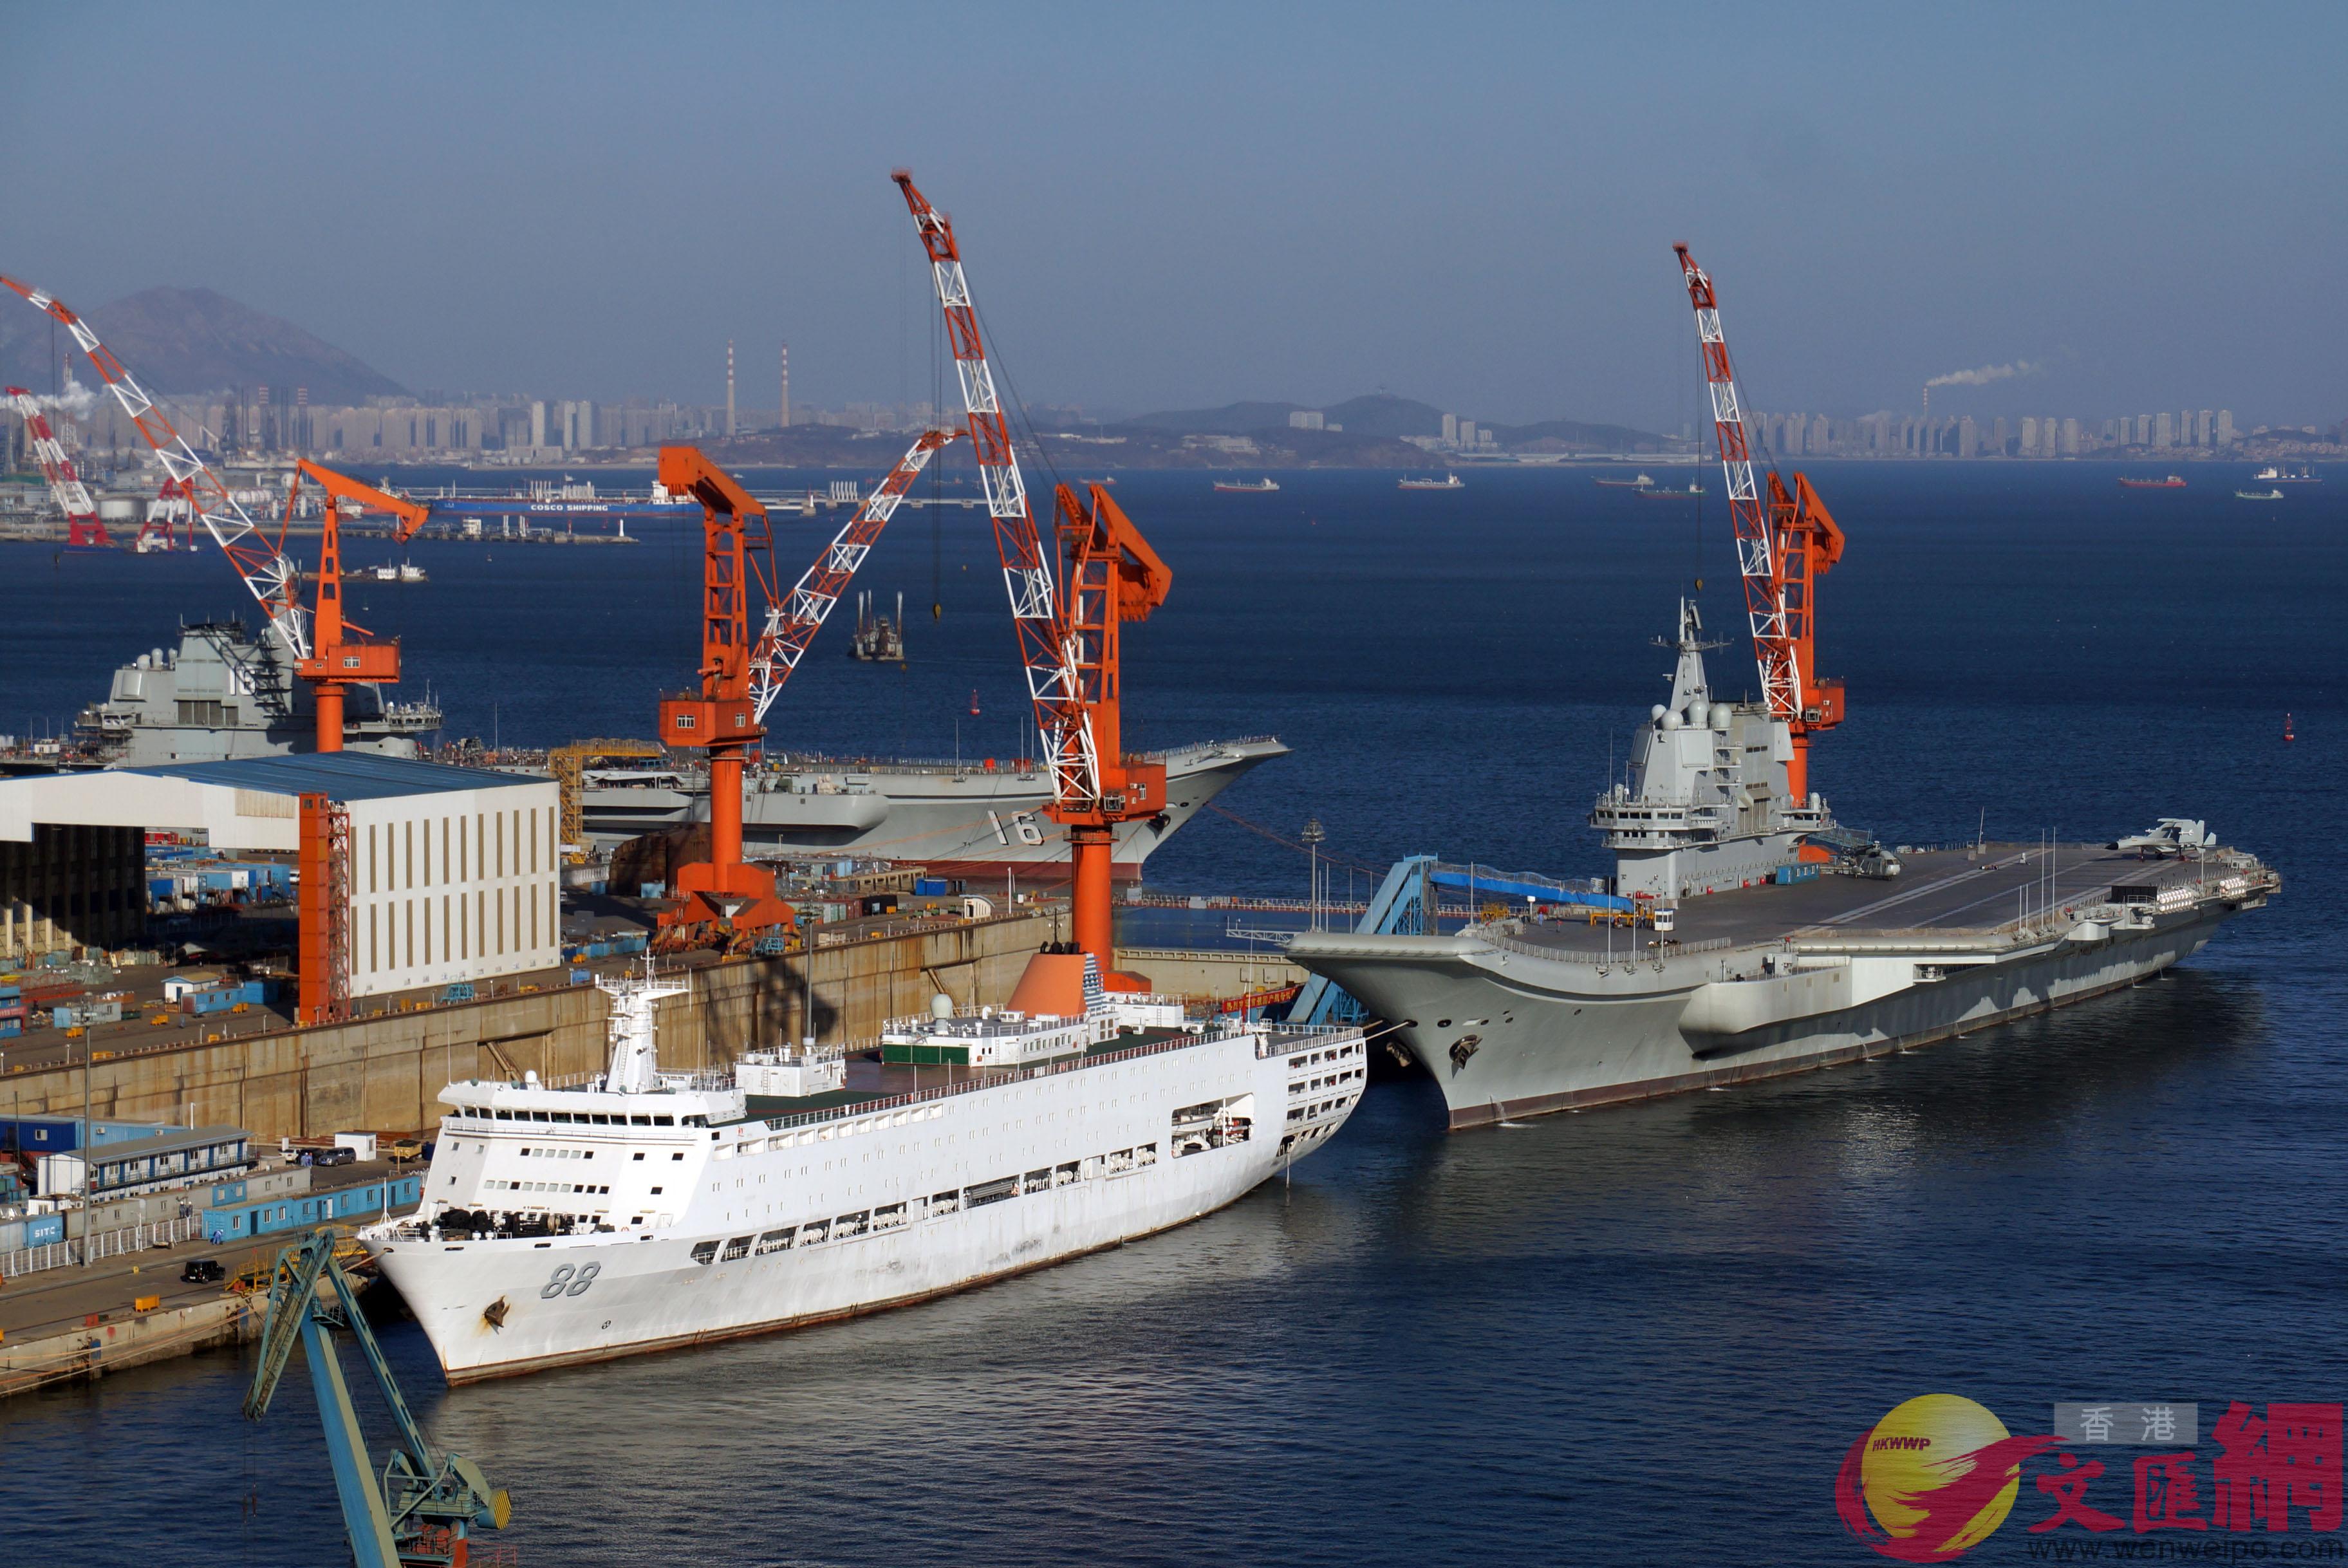 國產航母(右)和遼寧艦(左)成90度靠泊A船塢內仍為空置狀態]記者 宋偉 攝^